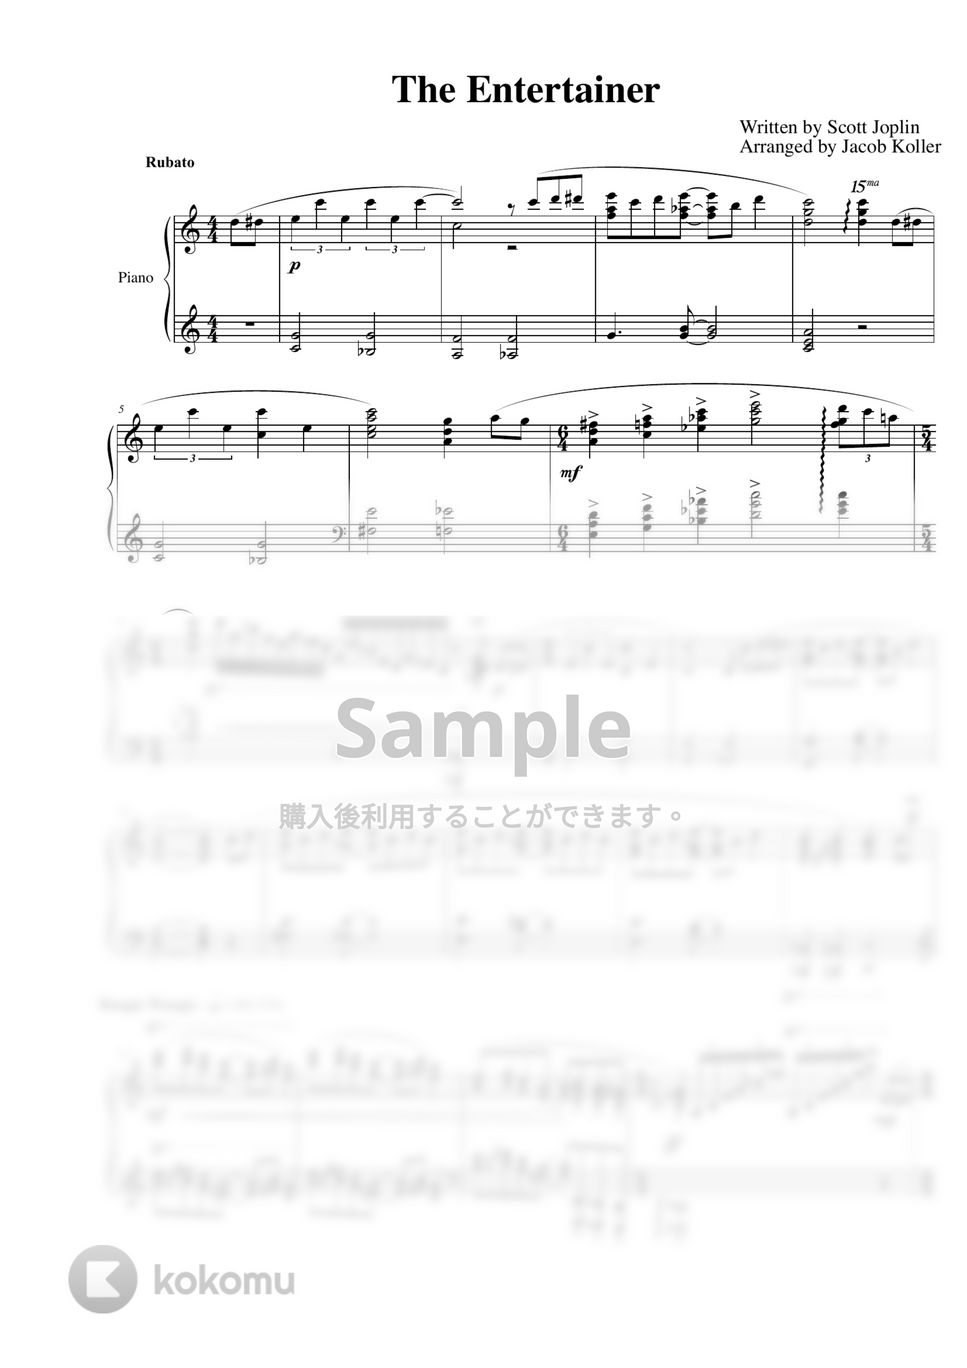 Scott Joplin - The Entertainer (上級ピアノ) by Jacob Koller